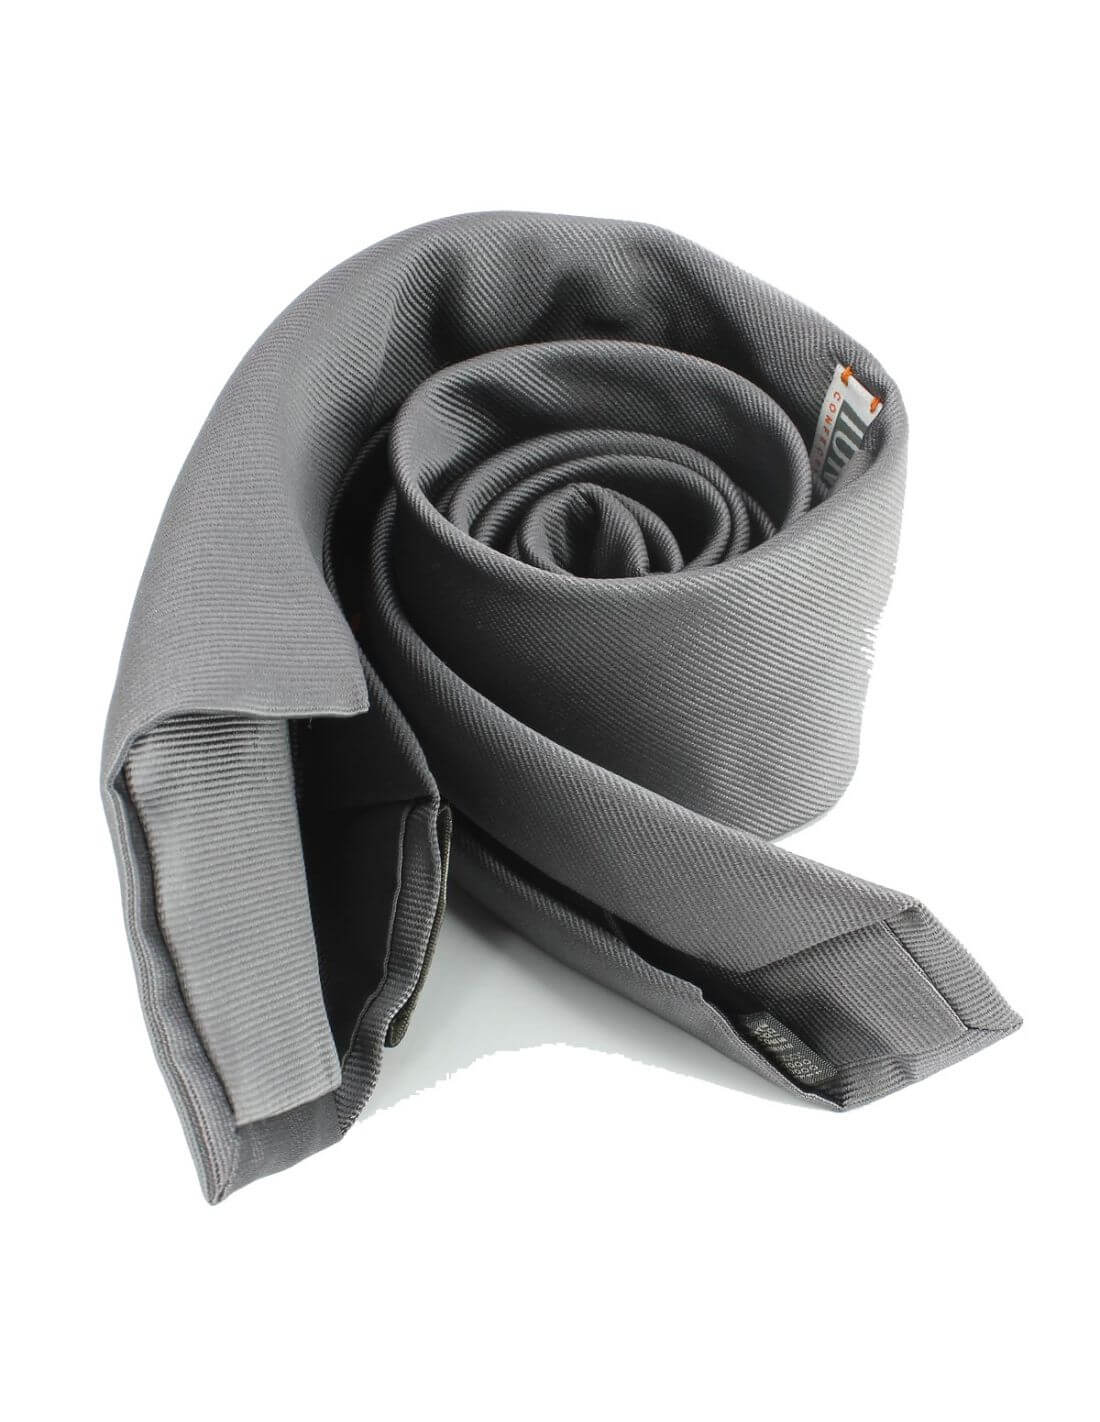 cravate-6-plis-luxe-soie